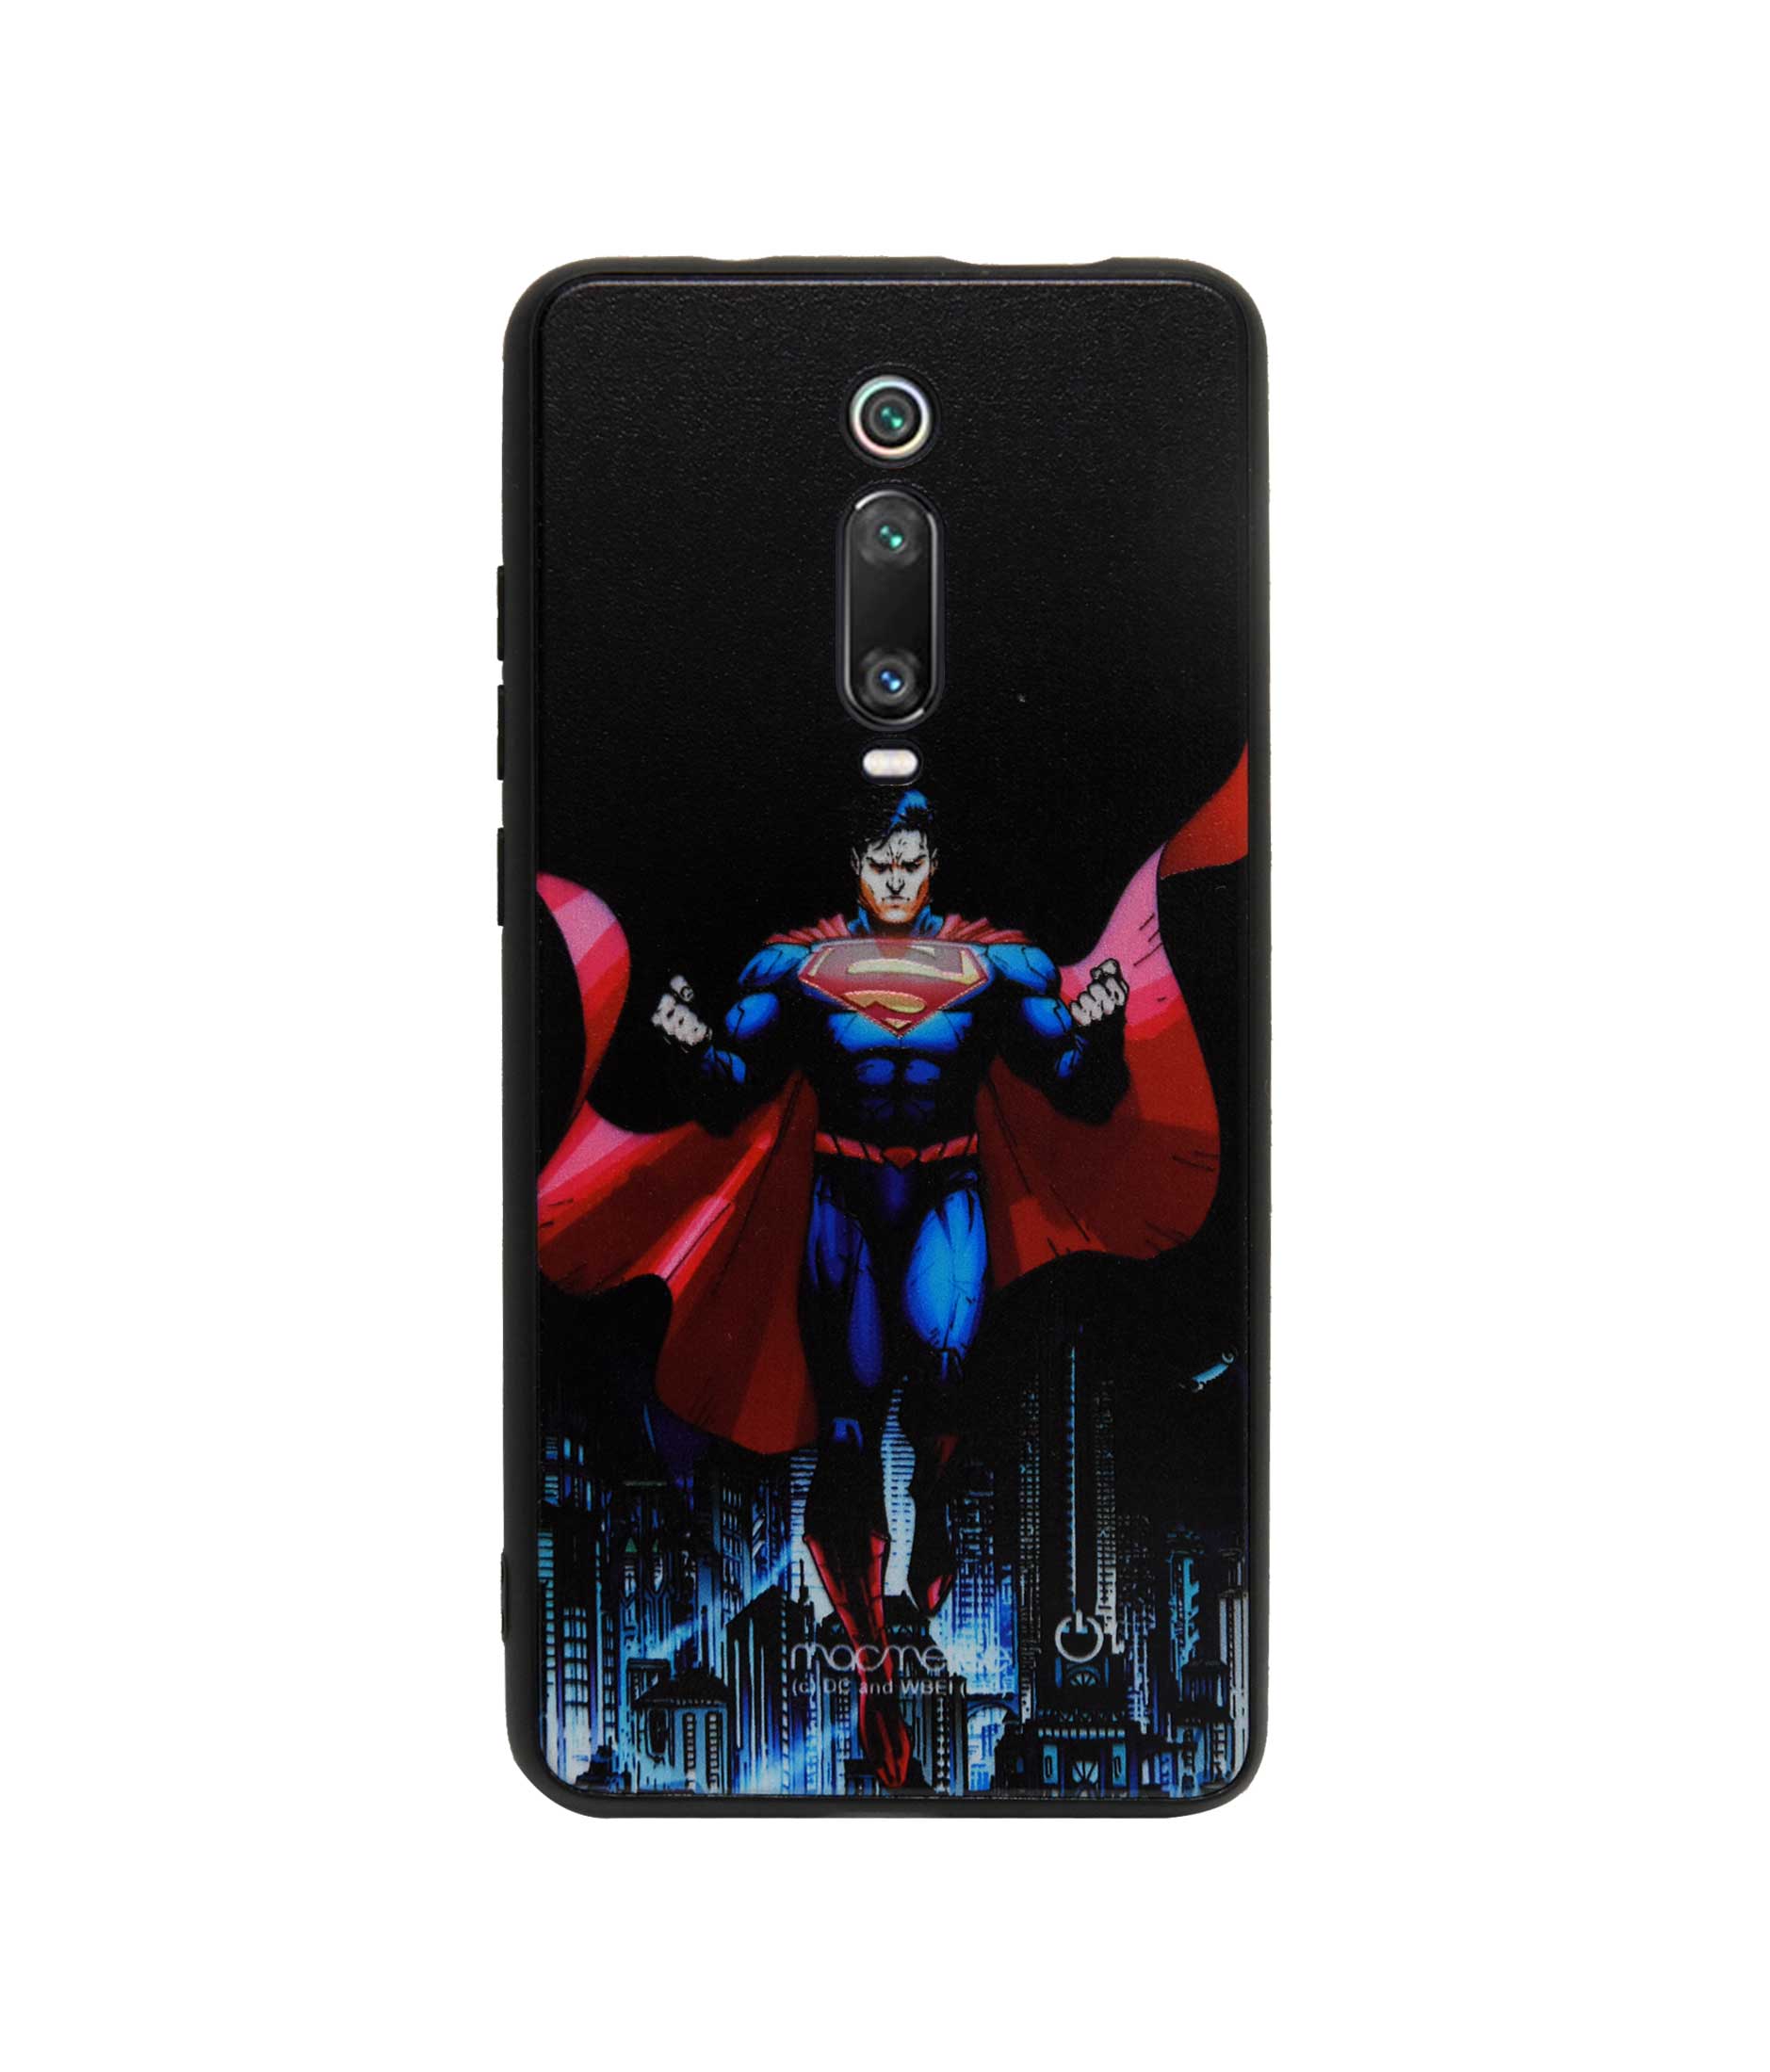 Metropolis Savior - Lumous LED Phone Case for Xiaomi Redmi K20 Pro